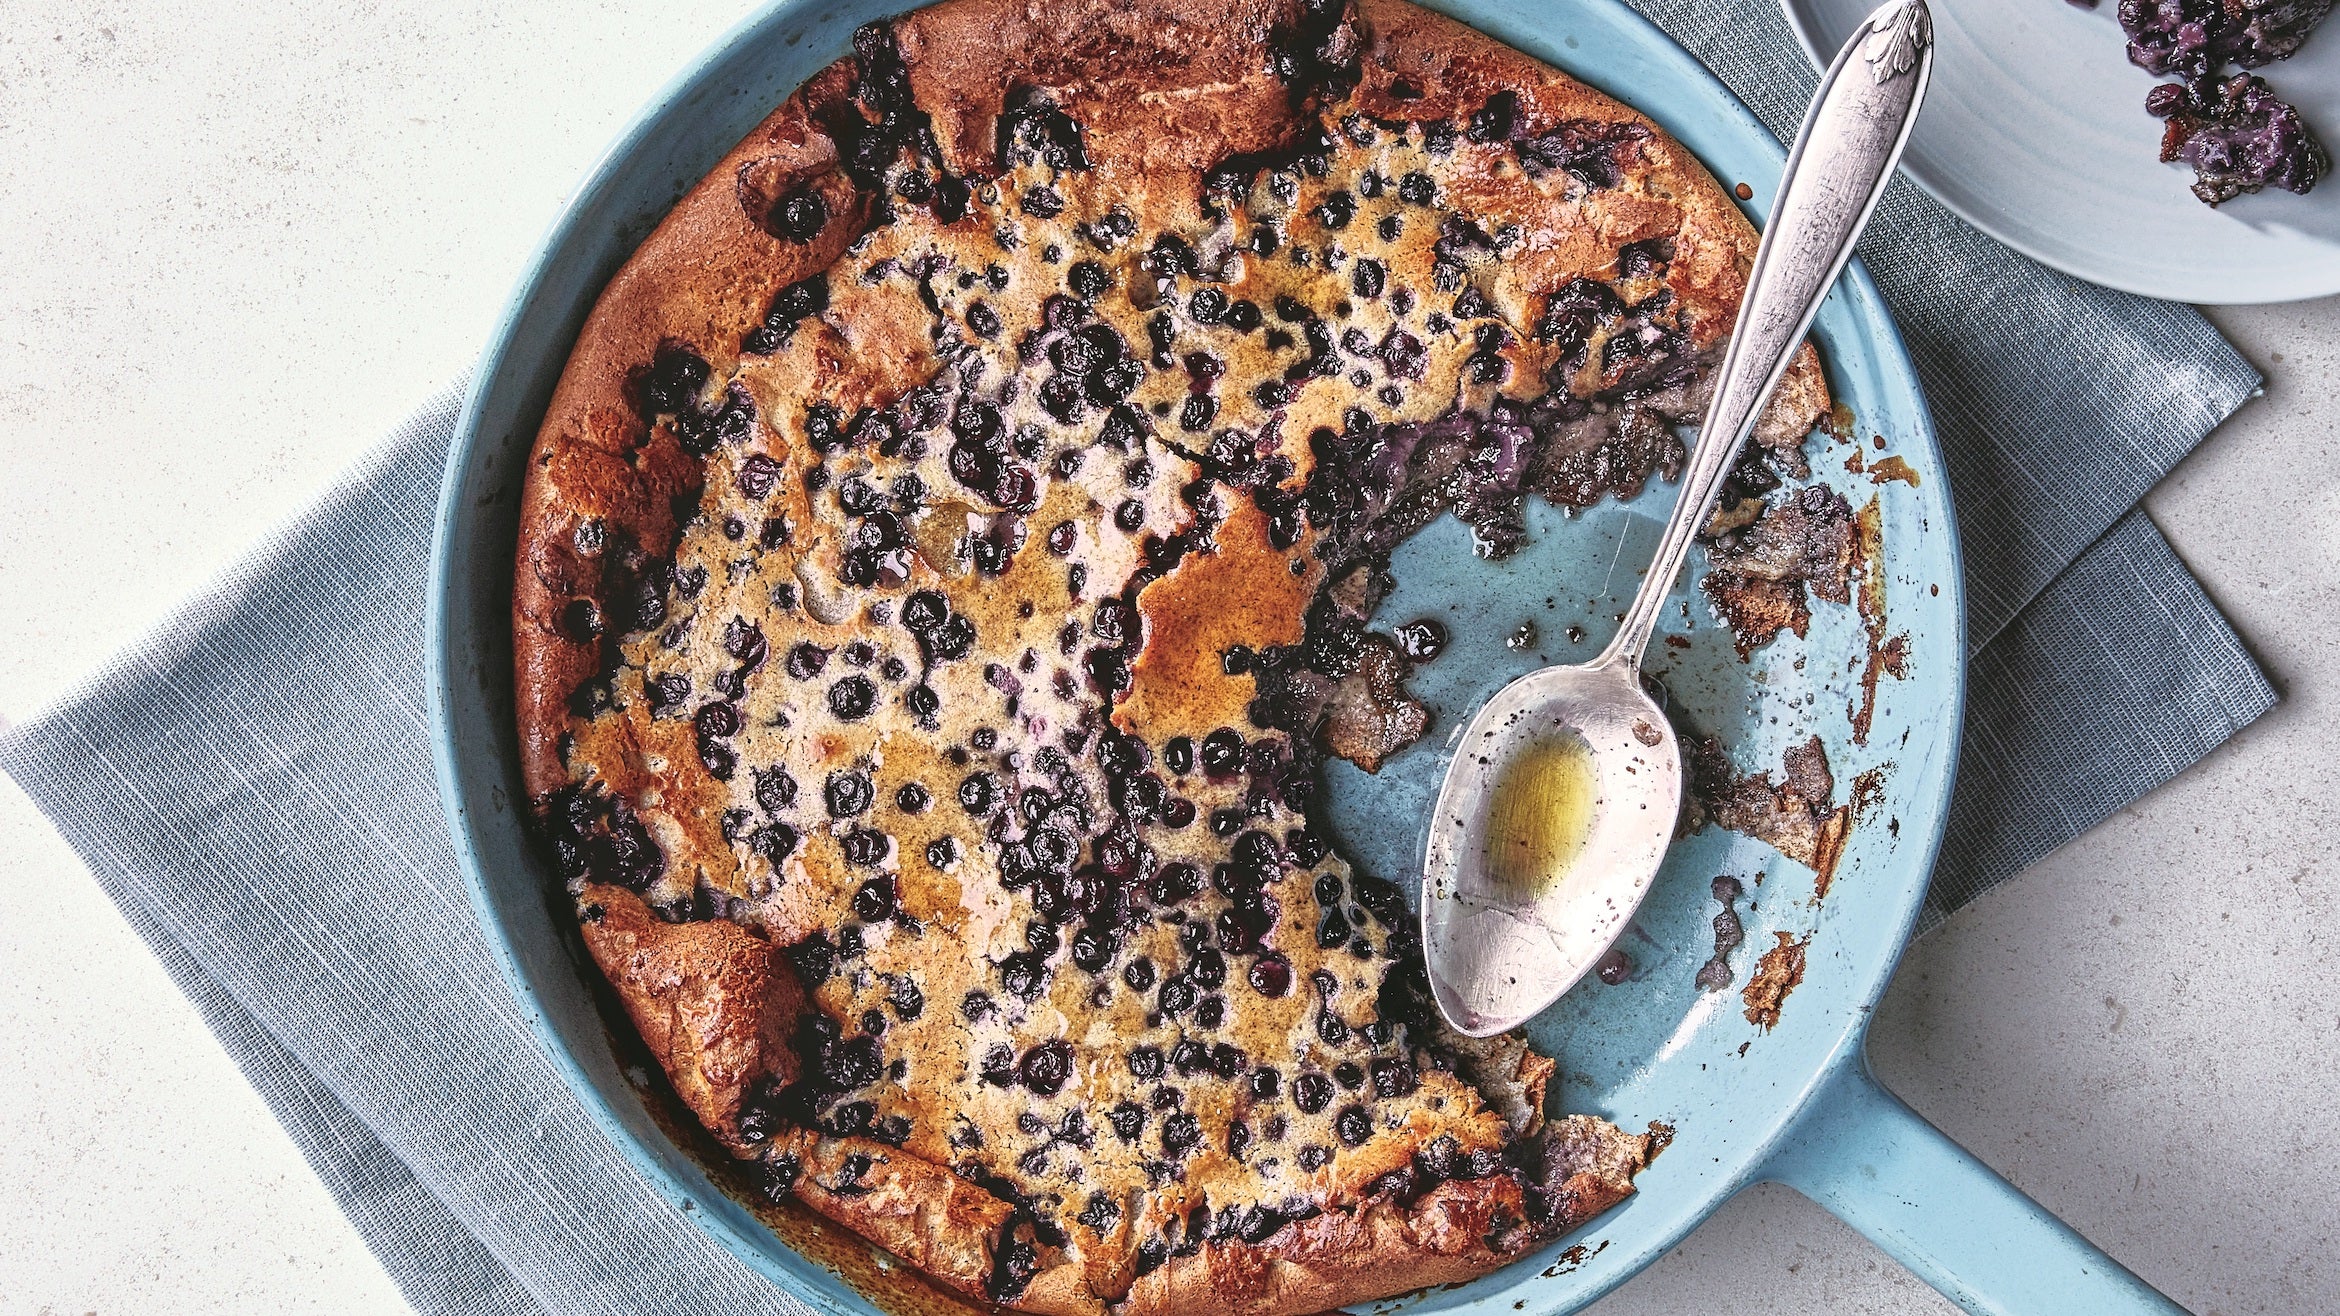 Skillet Blueberry Pancake Recipe